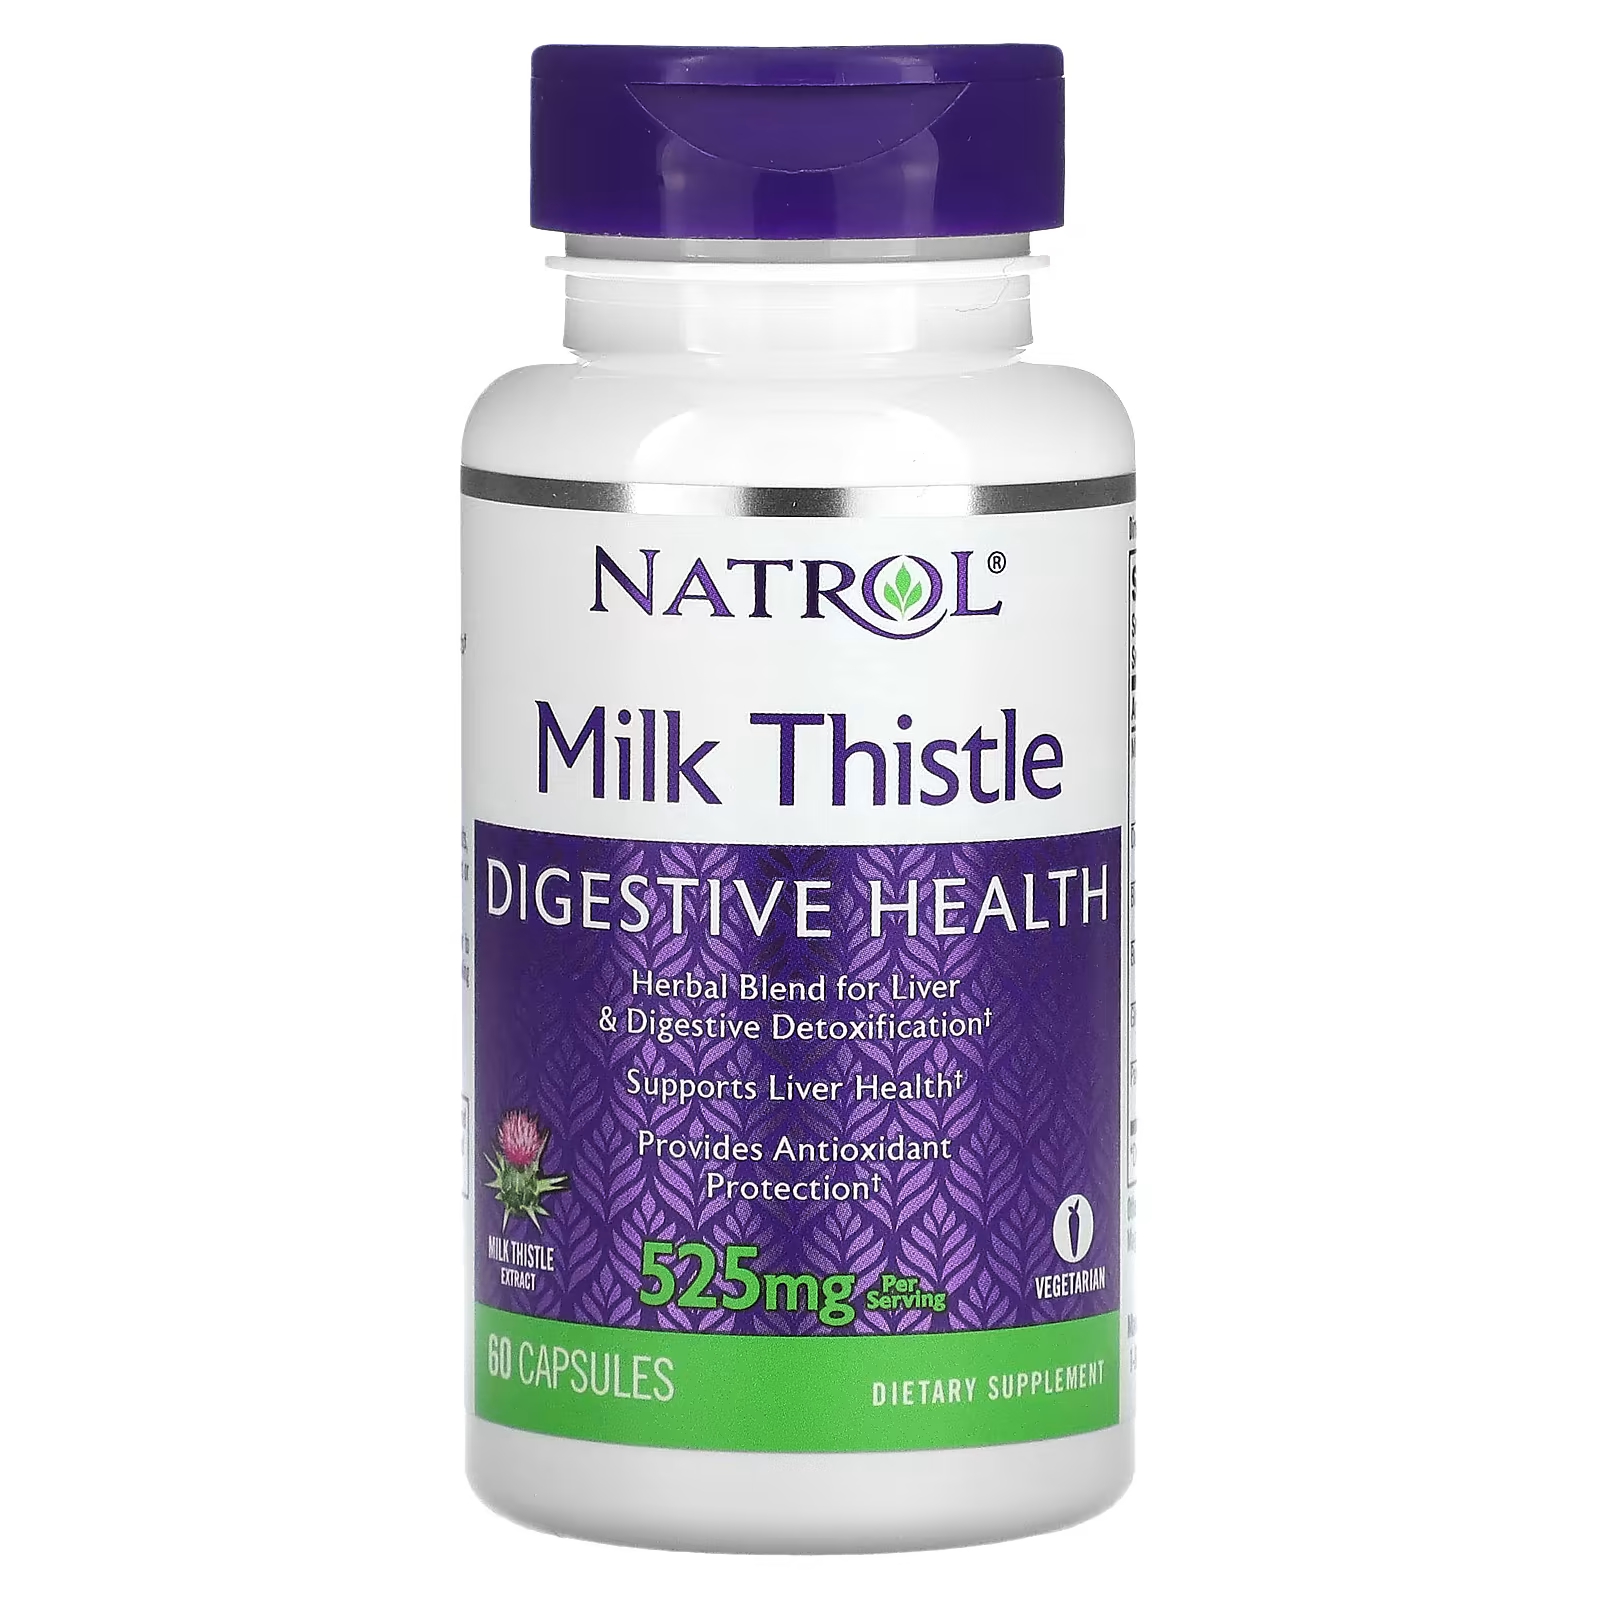 Расторопша Natrol 525 мг, 60 капсул (262,5 мг в капсуле) бад для поддержки пищеварения natrol milk thistle расторопша 525 мг в капсулах 60 шт